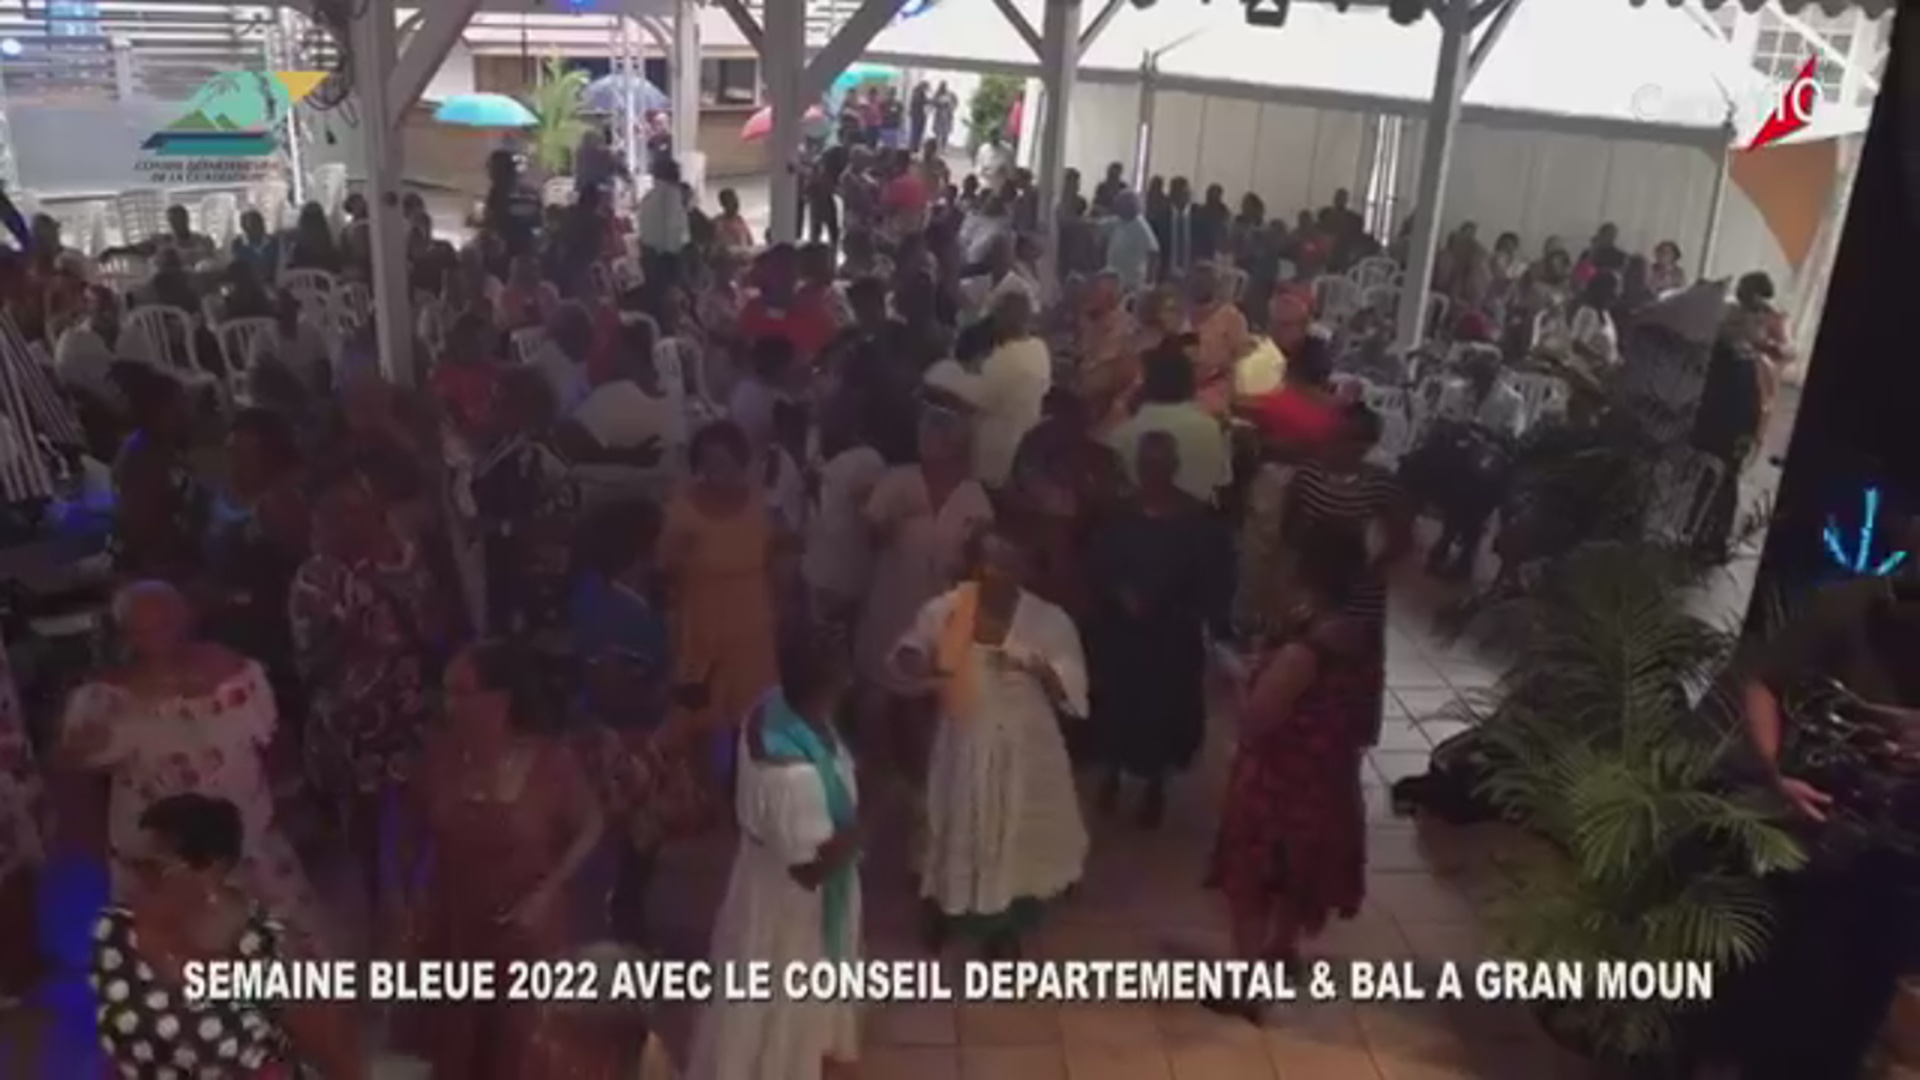 [Vidéo]Guadeloupe. Semaine bleue bal à gran moun organisé par le Conseil Départemental